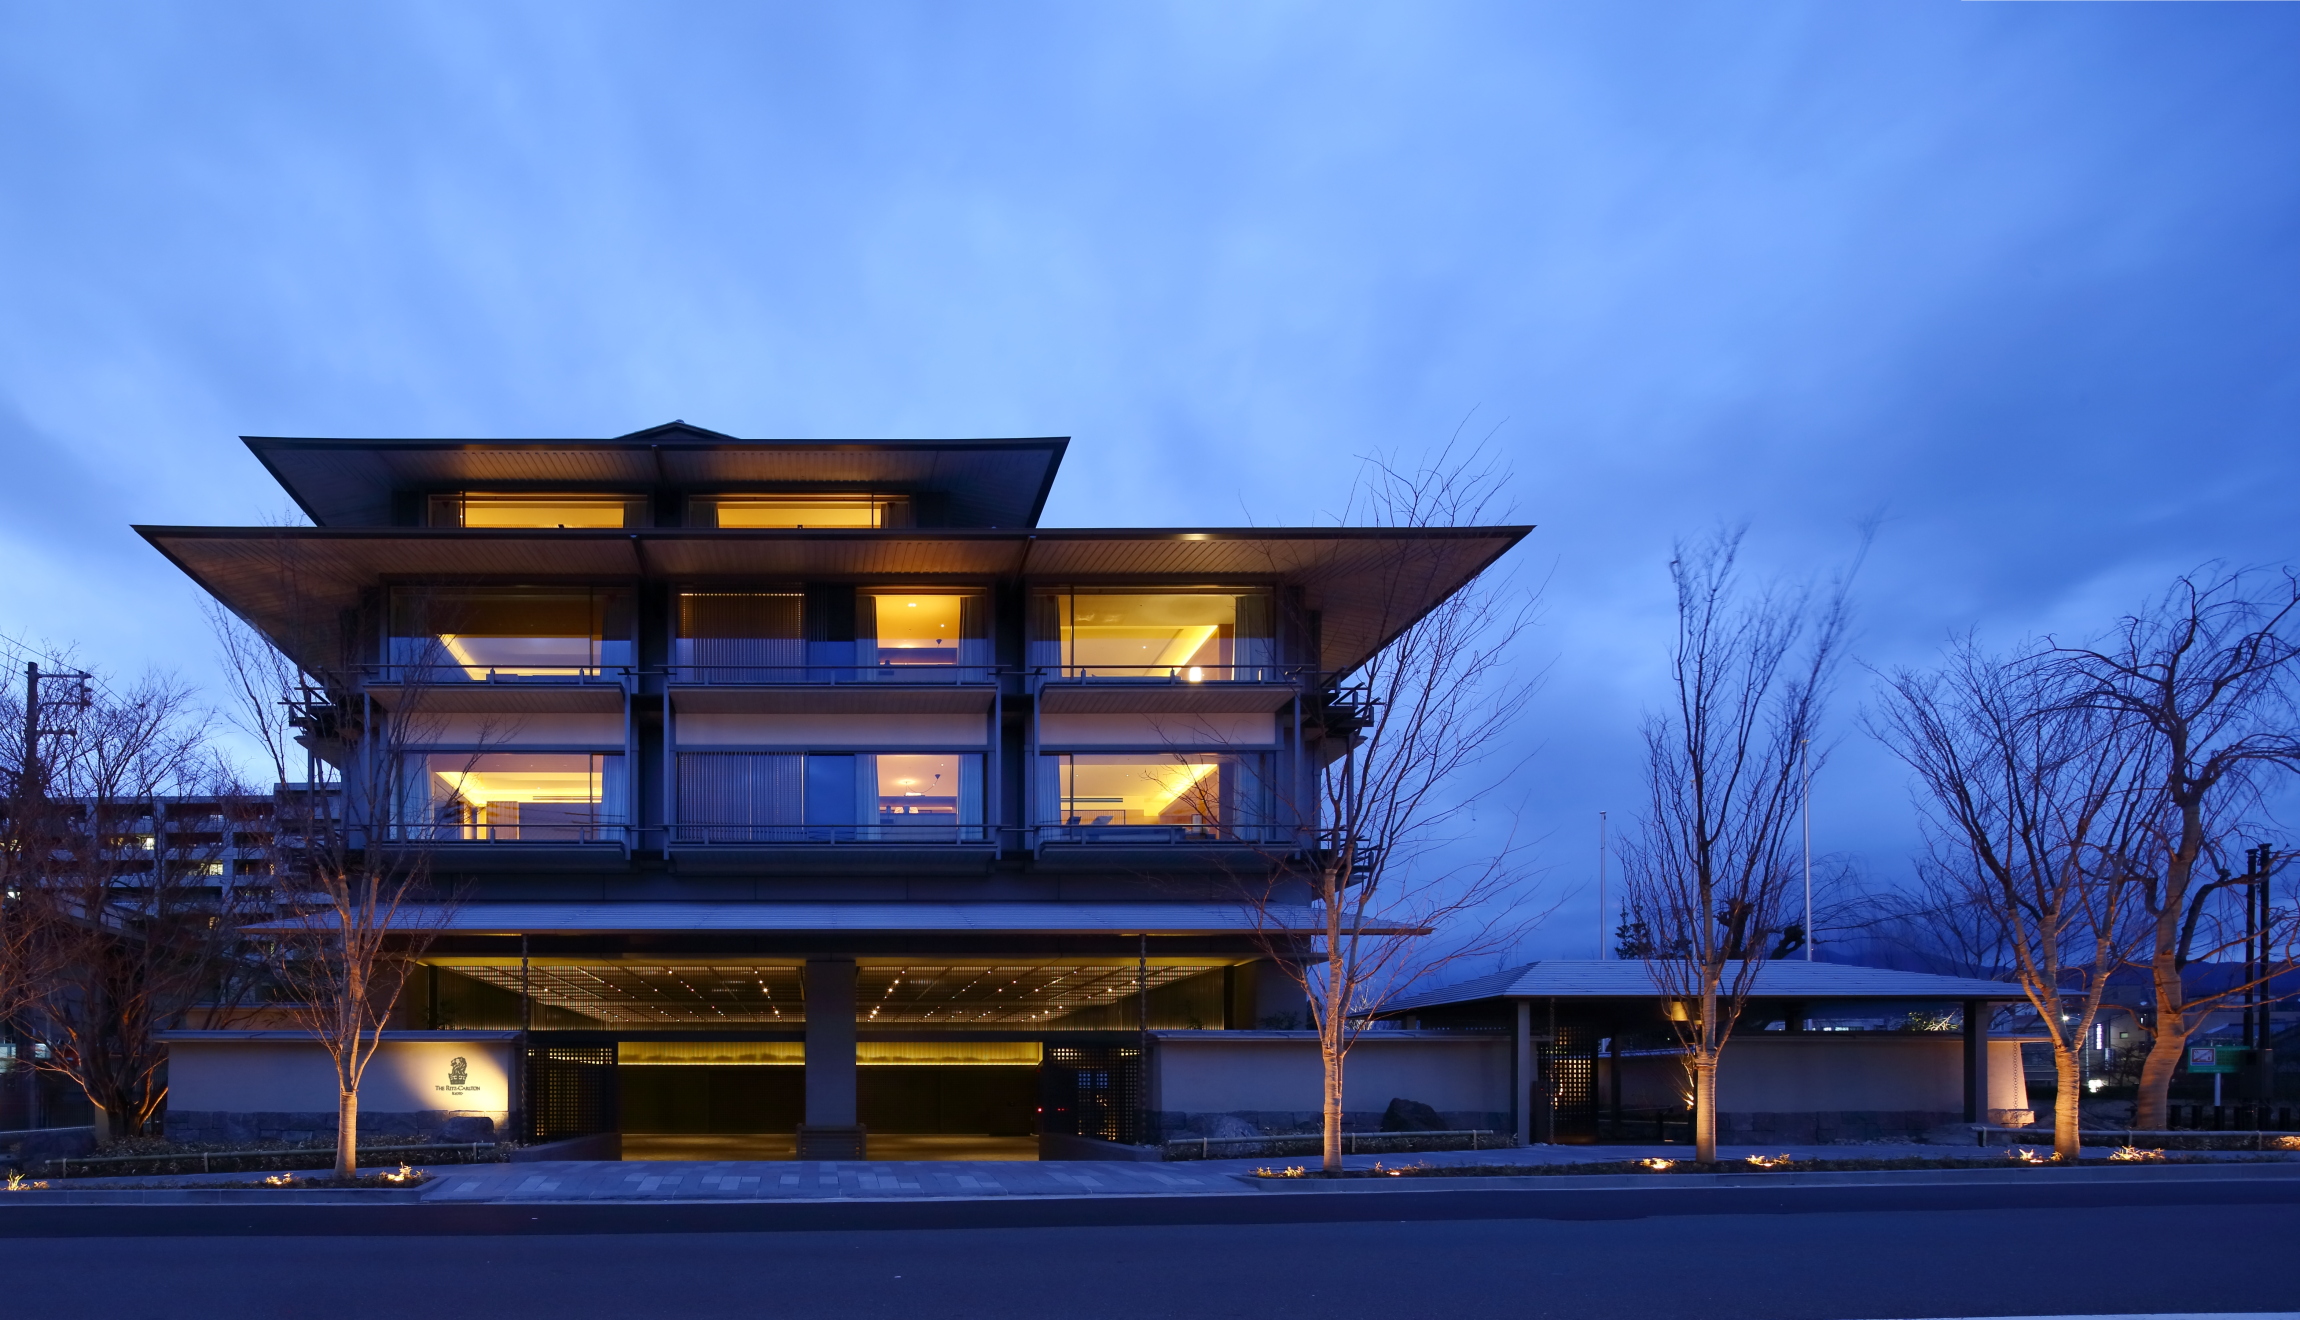 日本京都安缦酒店-Kerry Hill Architects-宾馆酒店建筑案例-筑龙建筑设计论坛